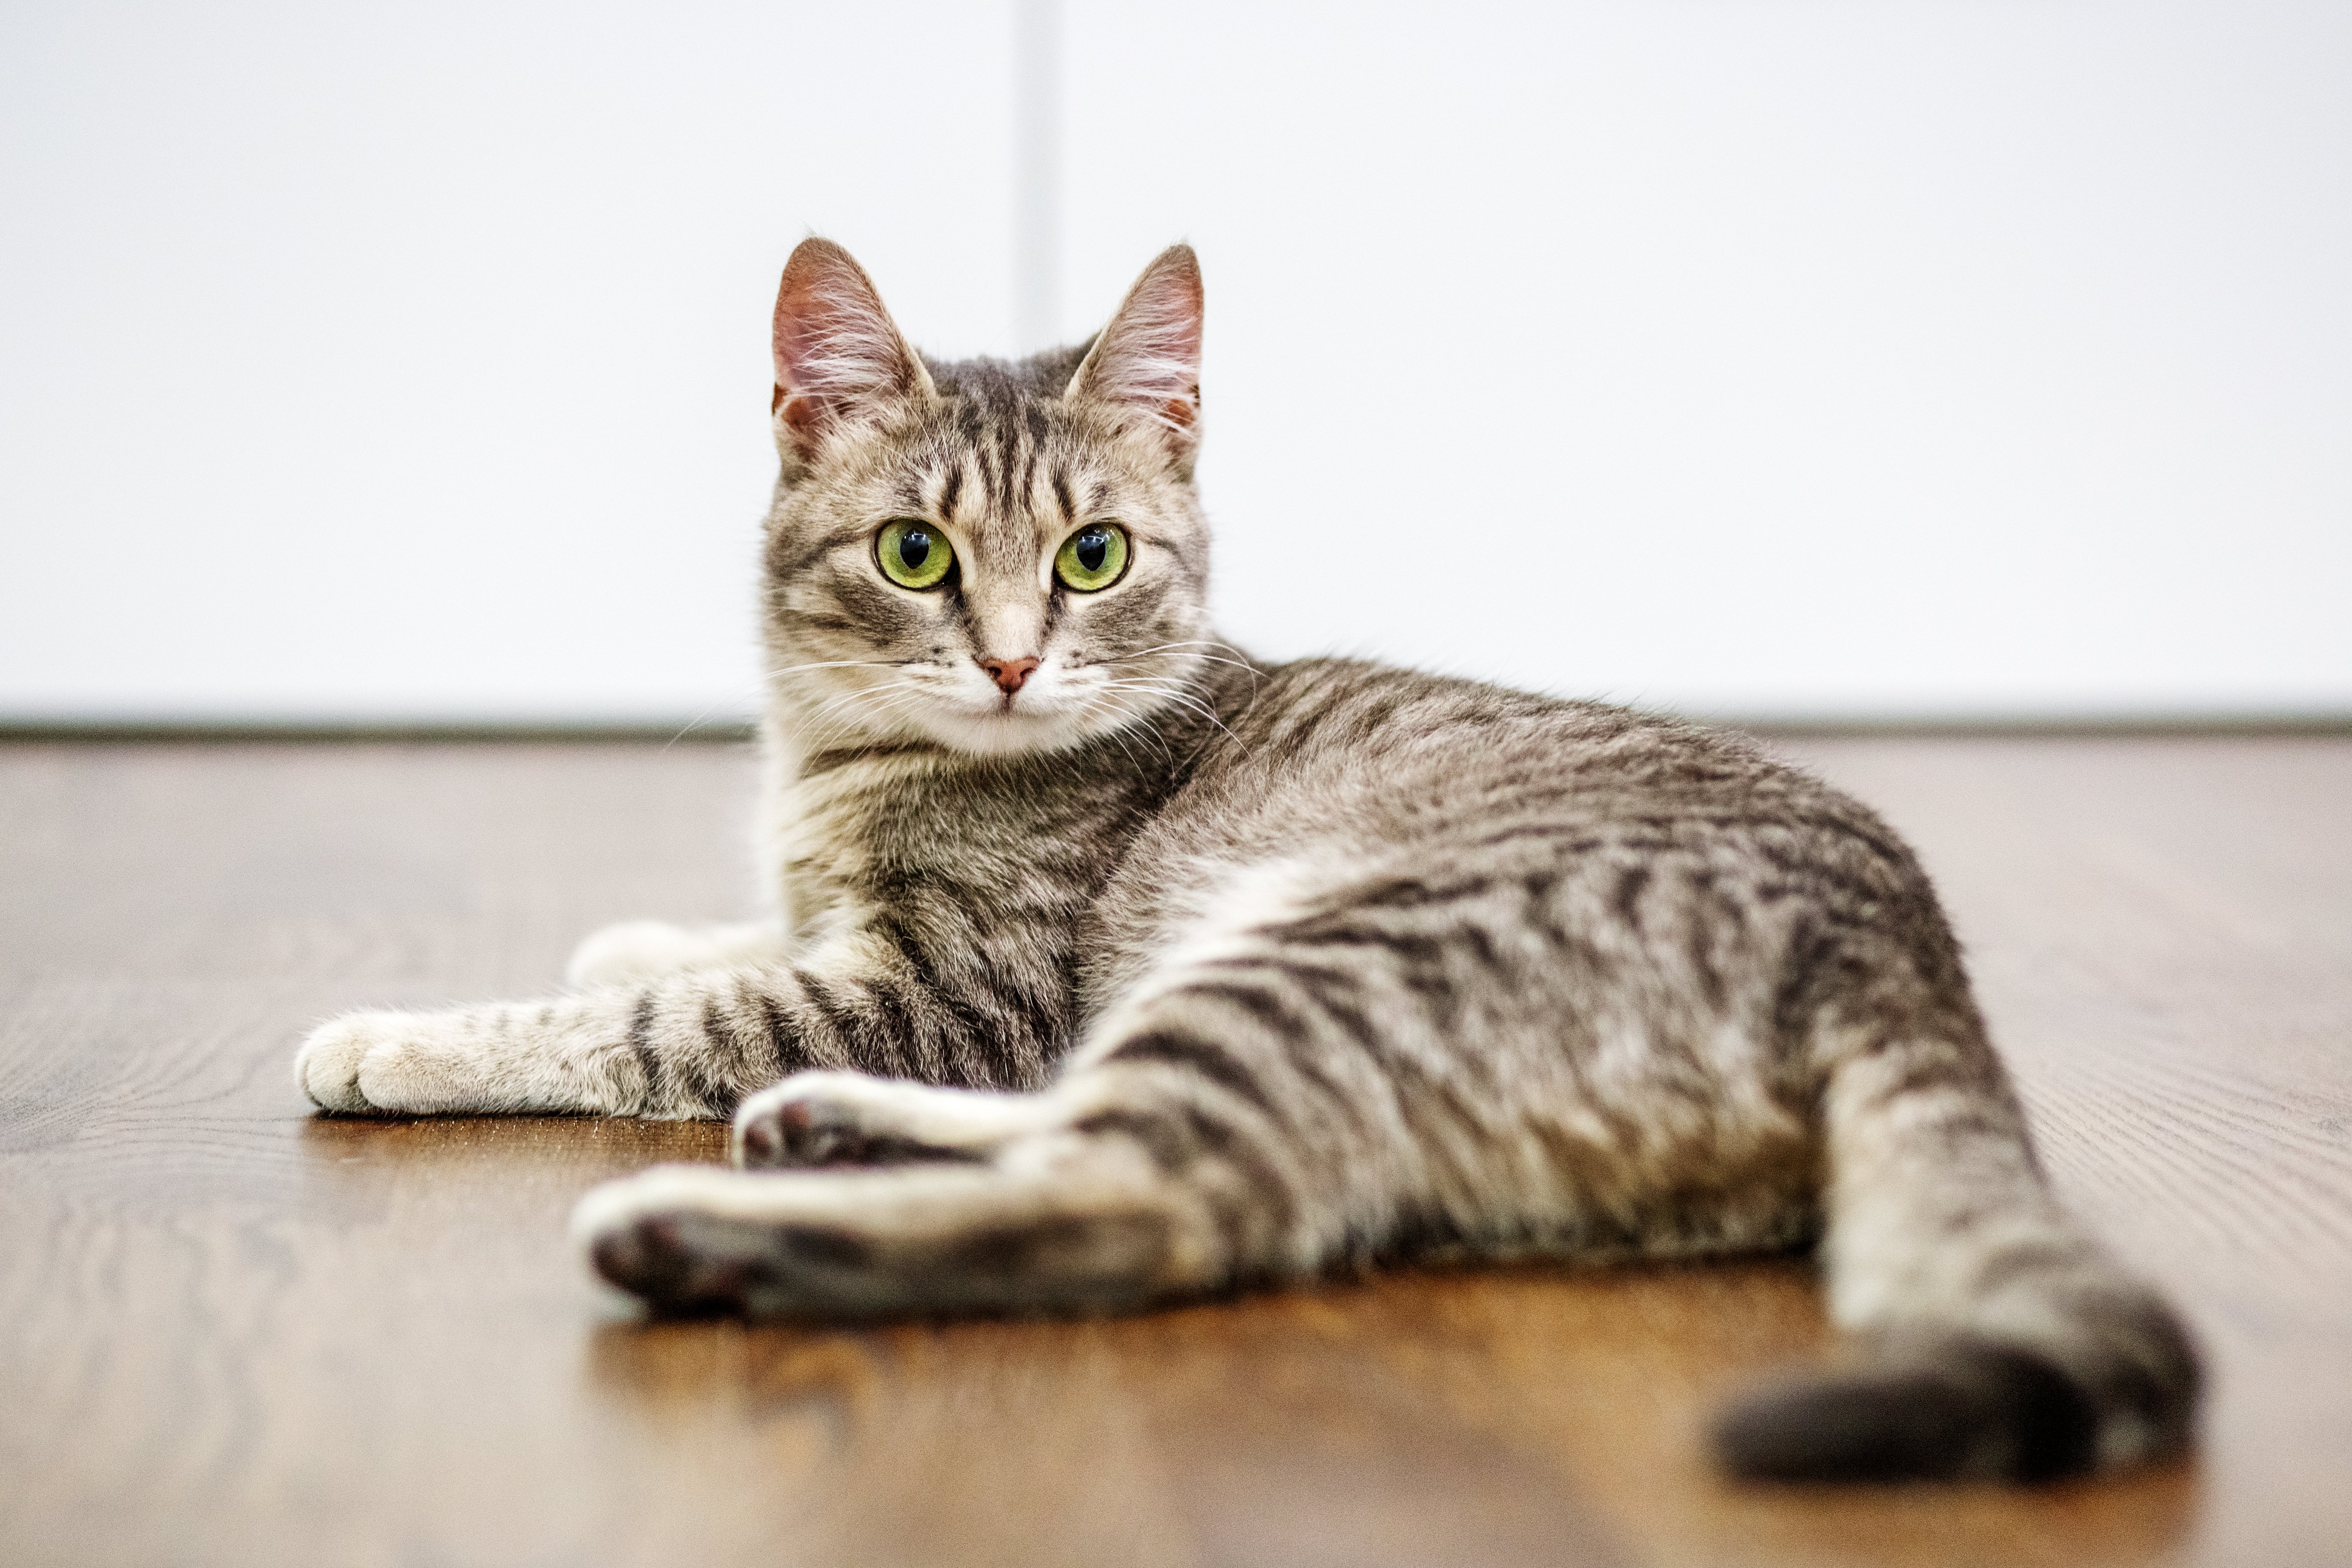 Cat lay on hardwood floors